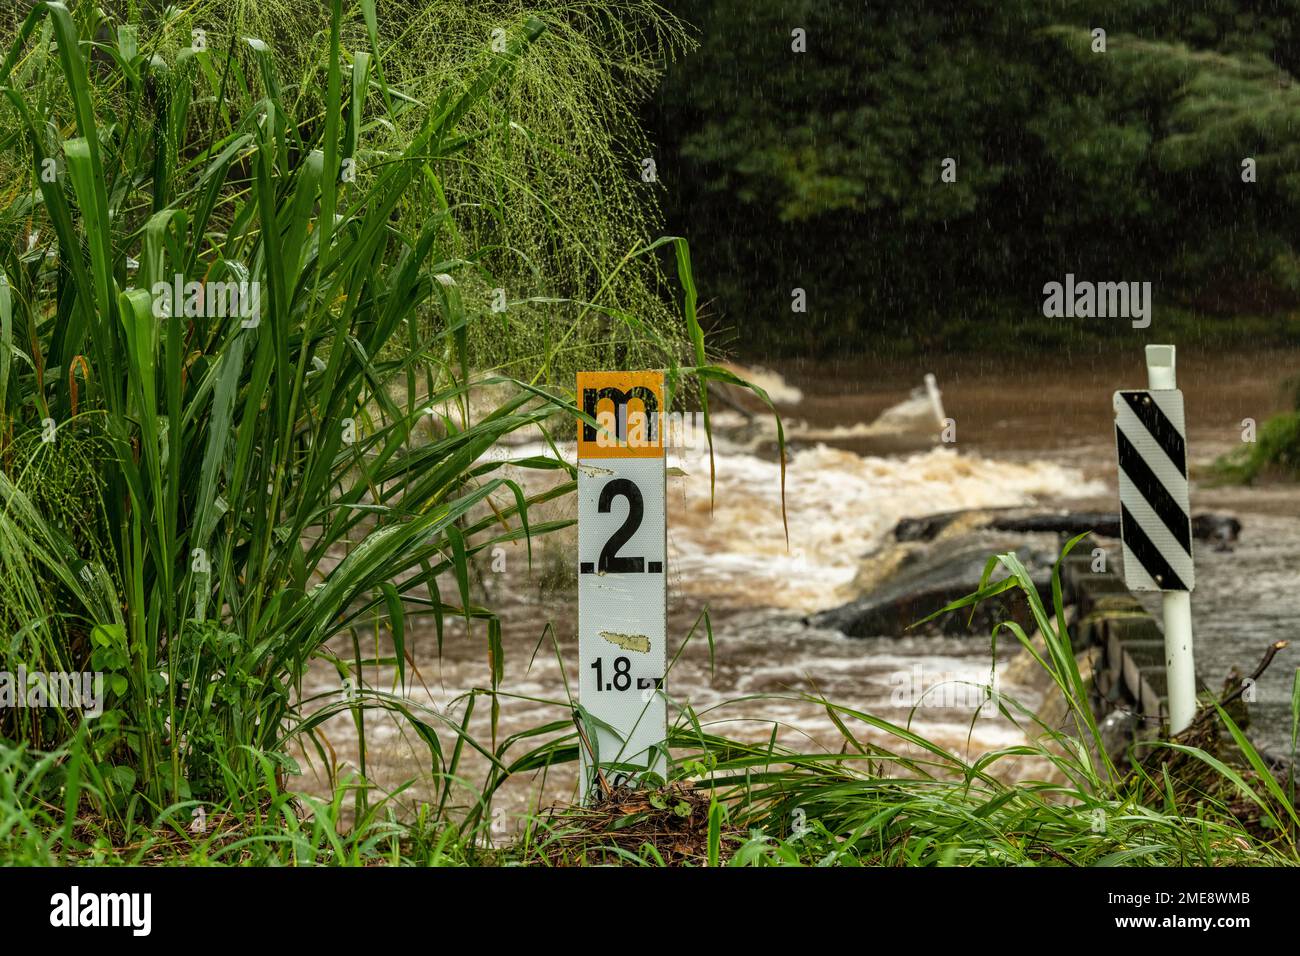 Marcador de profundidad que muestra el nivel de inundación del río South Pine en el cruce de Bunya Road en marzo de 2021 en las afueras de Brisbane, Australia Foto de stock